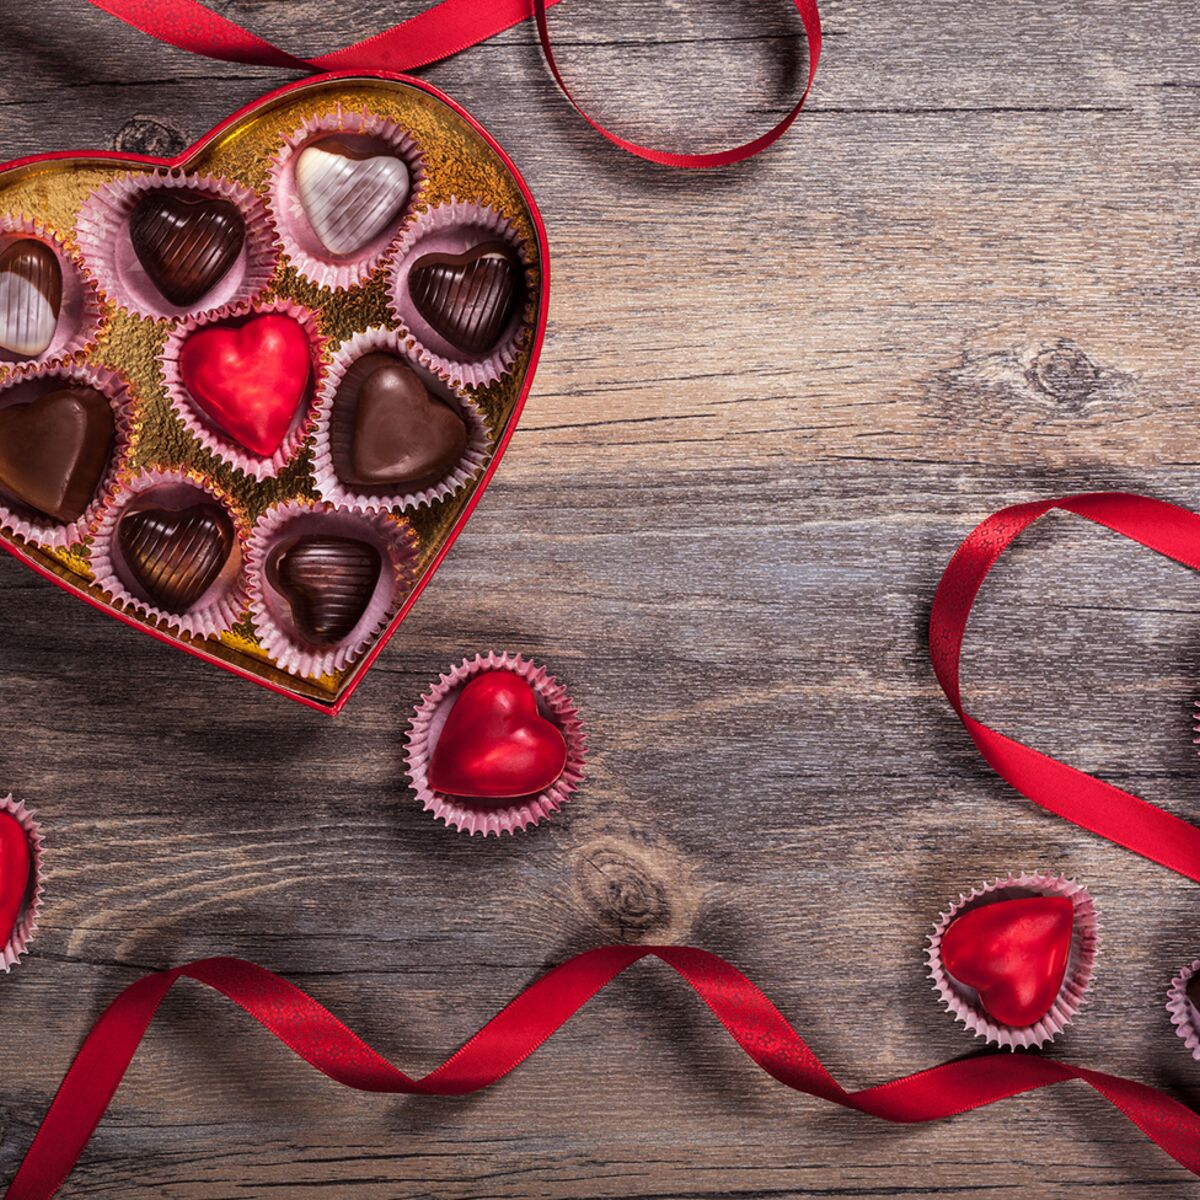 Des idées de cadeaux gourmands pour la Saint-Valentin